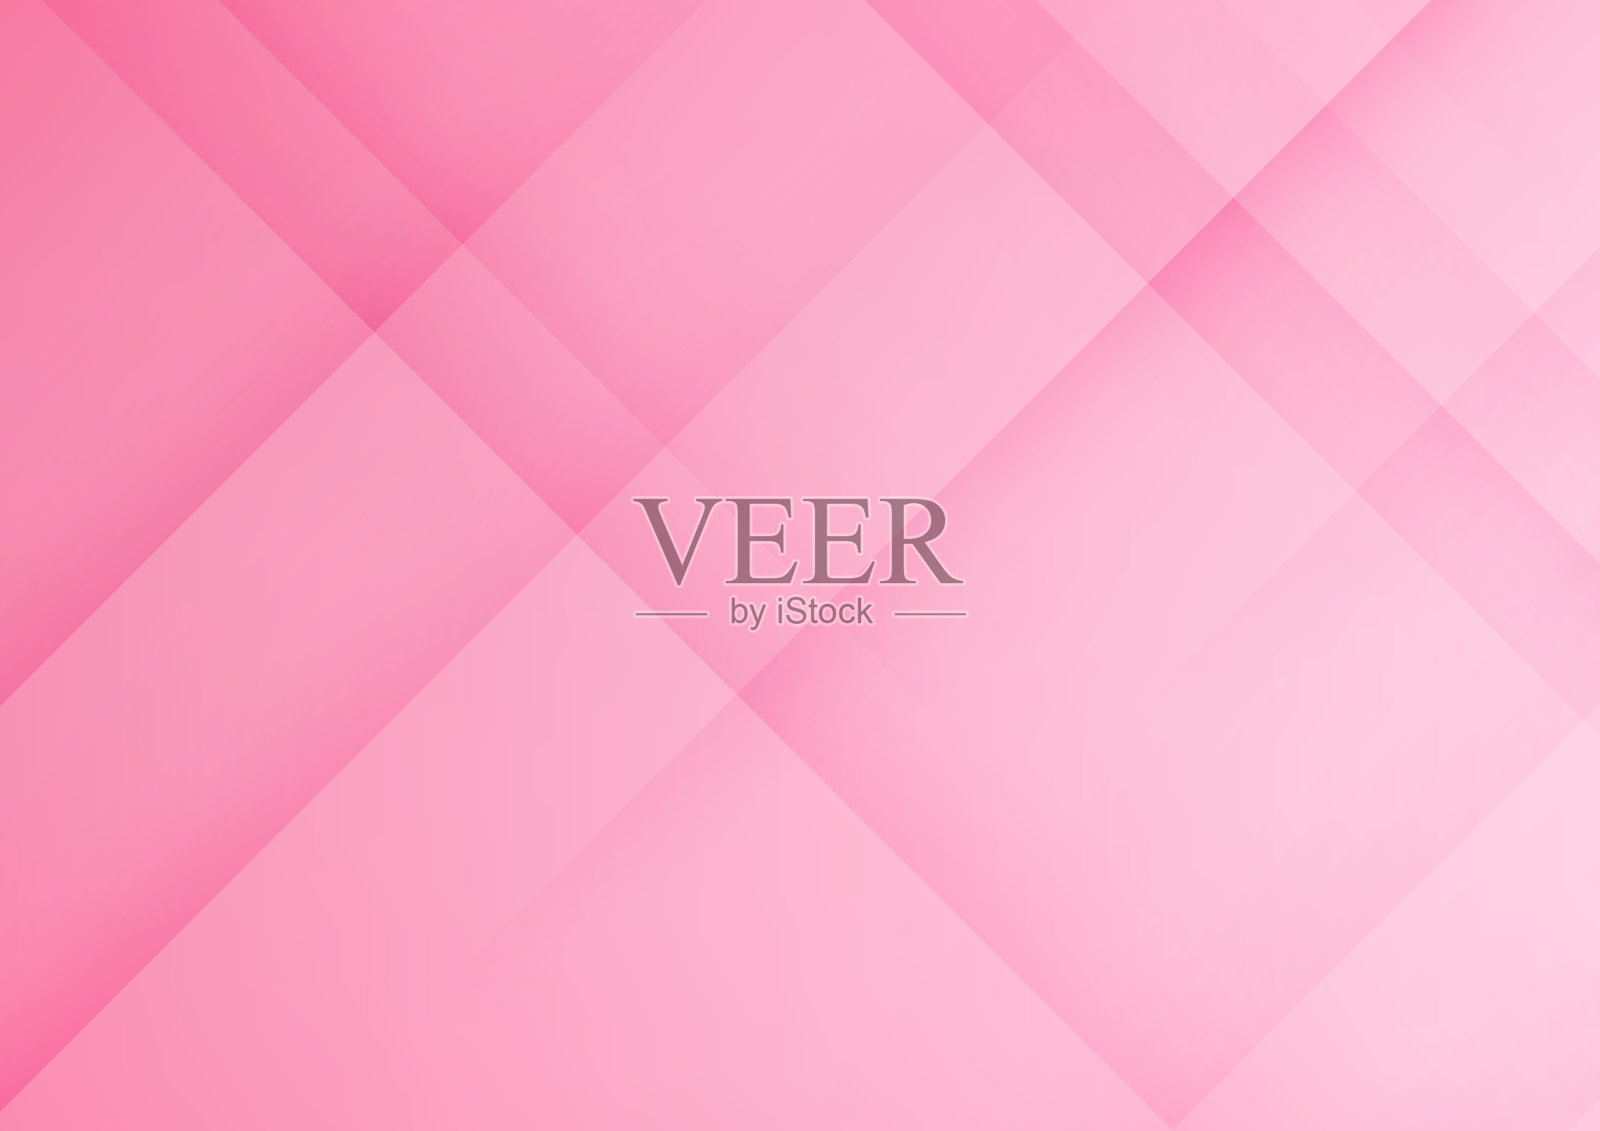 抽象的粉色几何矢量背景，可用于封面设计、海报、广告。插画图片素材